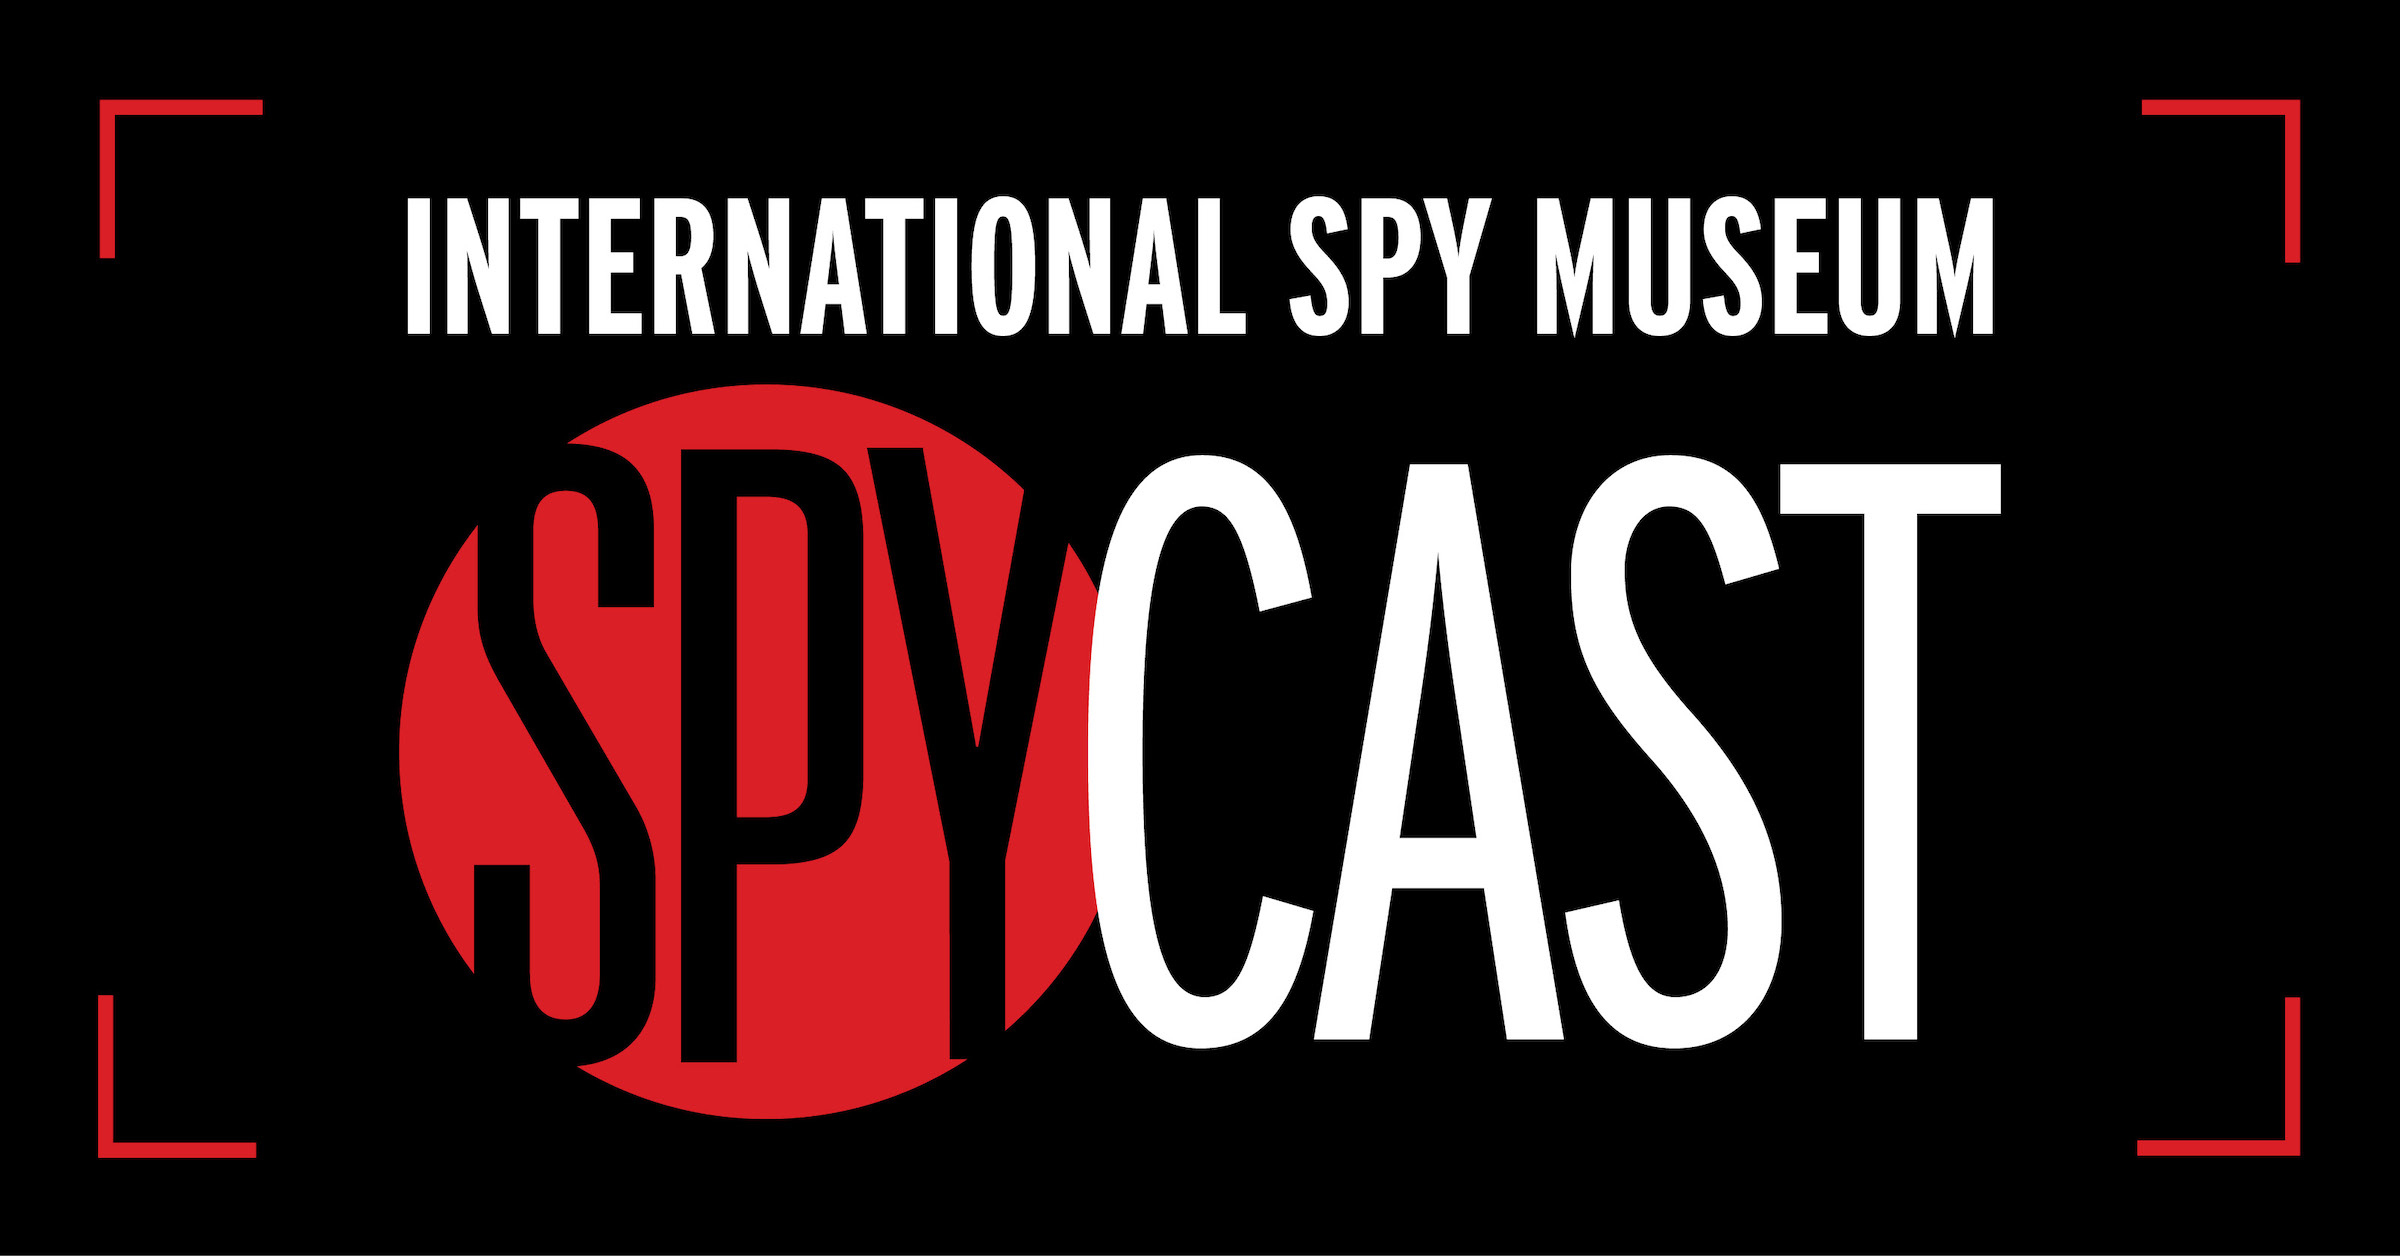 Spycast 11.15.16